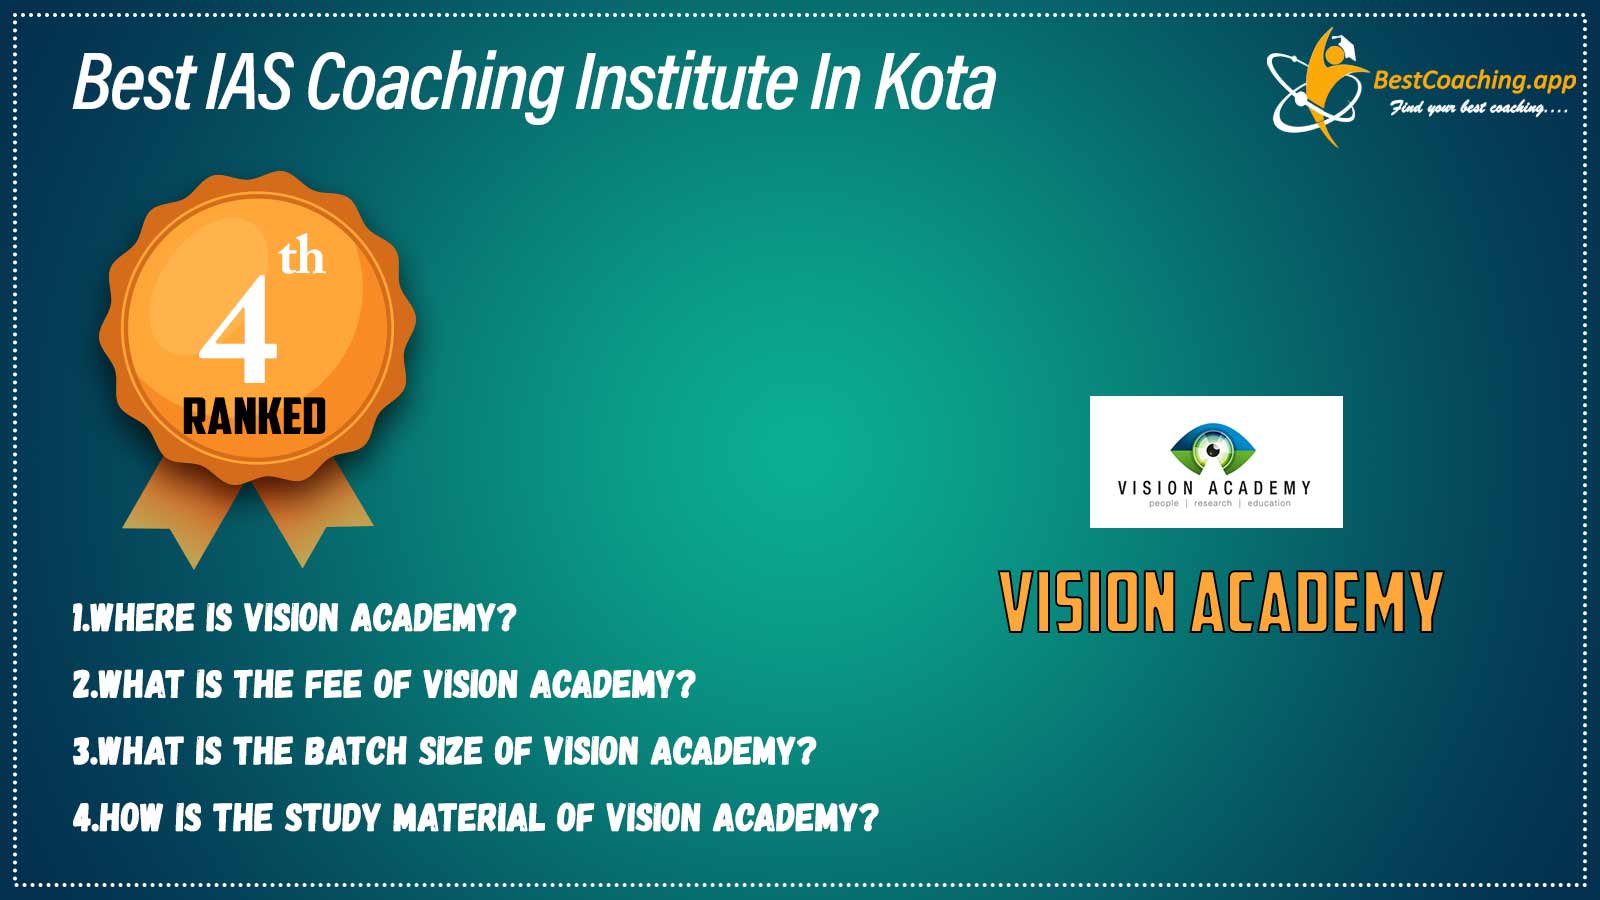 Best IAs Coaching Institute in Kota